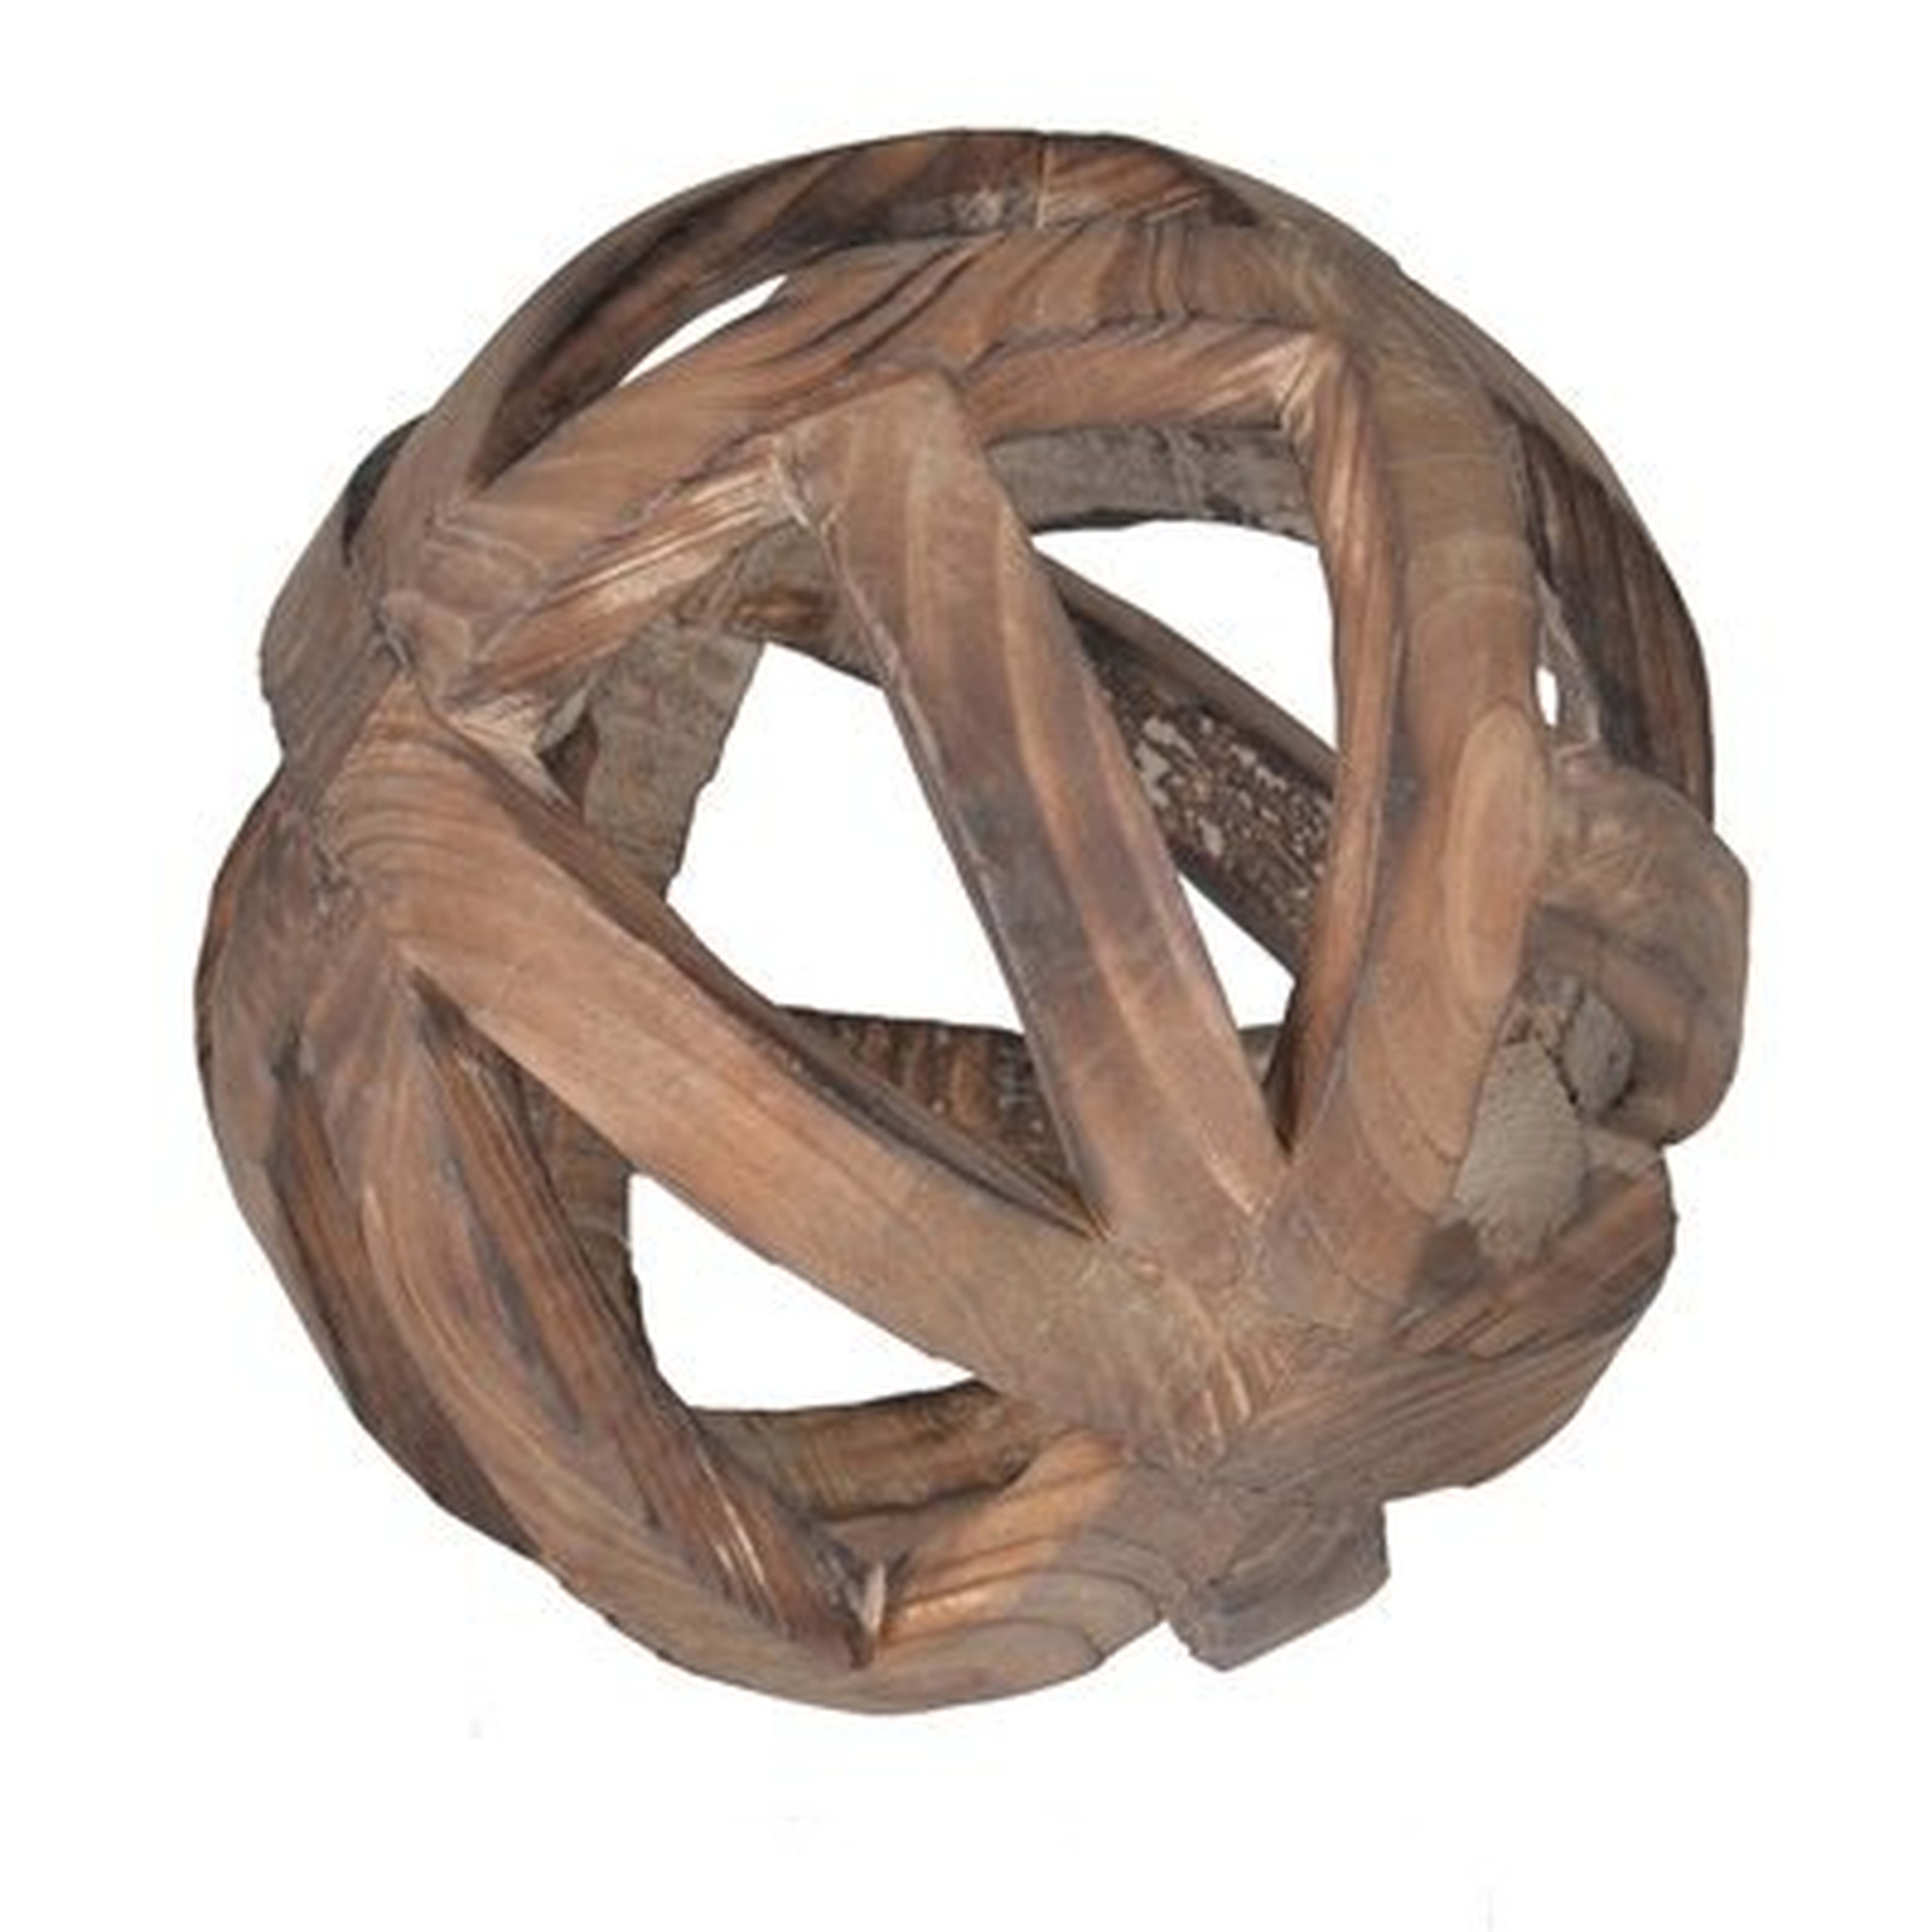 Brown Decorative Wood Ball Sculpture - Wayfair